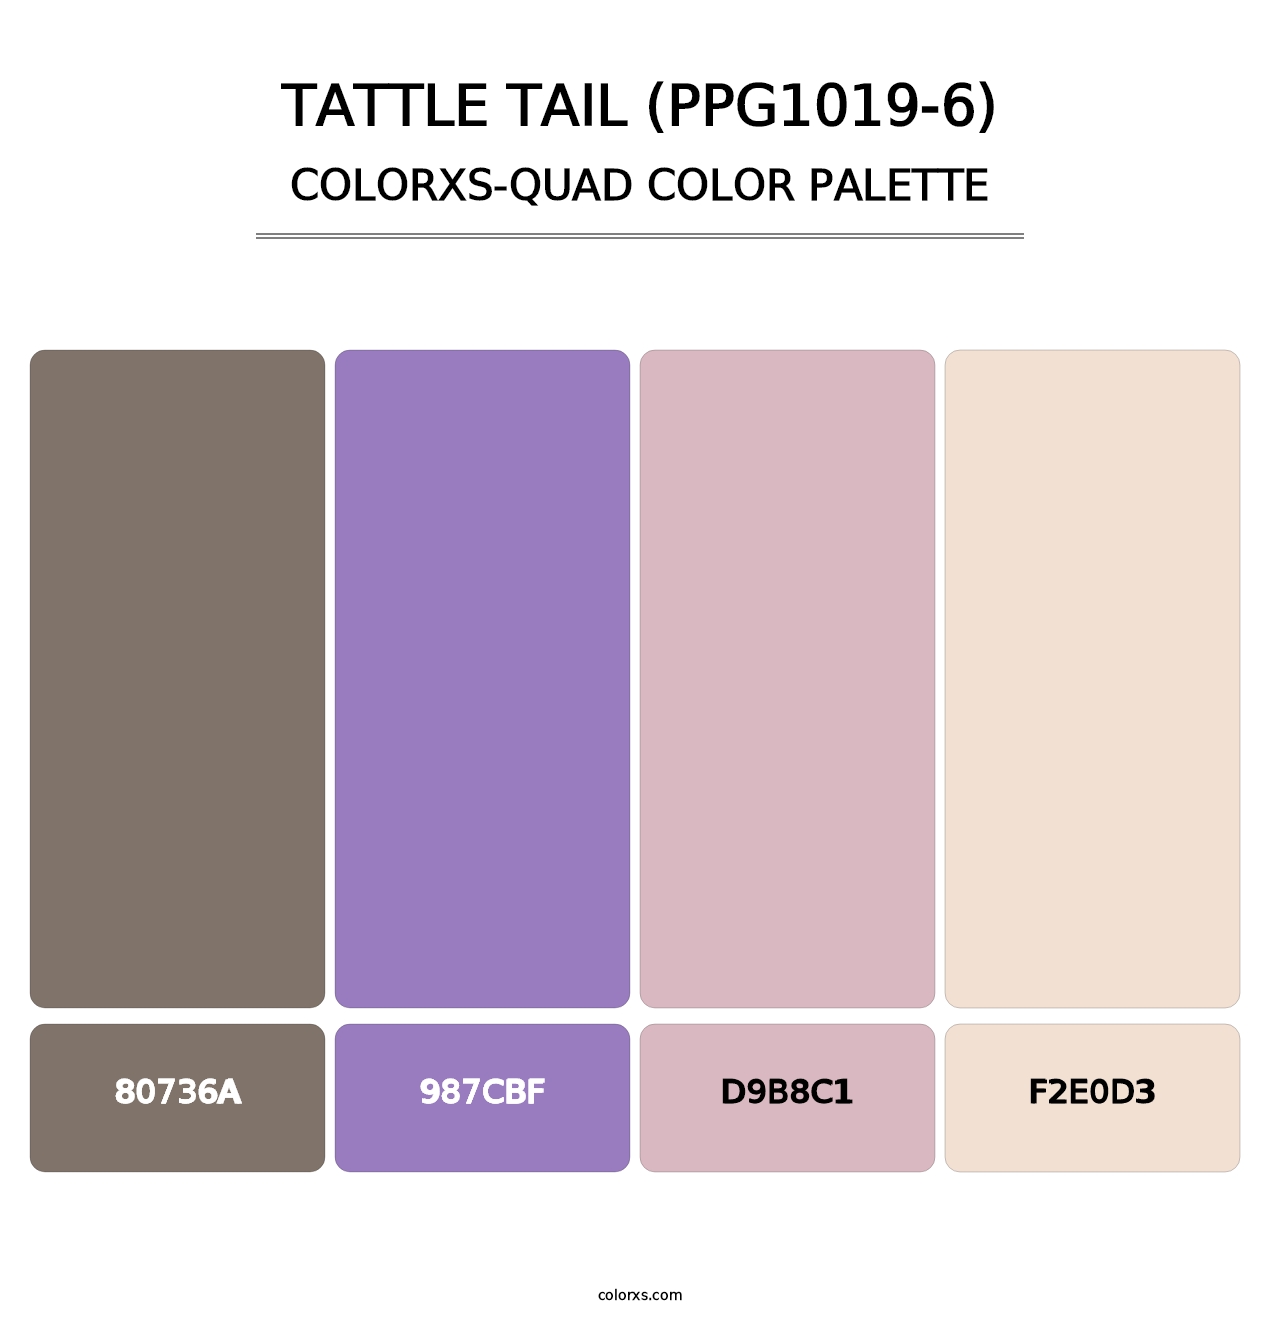 Tattle Tail (PPG1019-6) - Colorxs Quad Palette